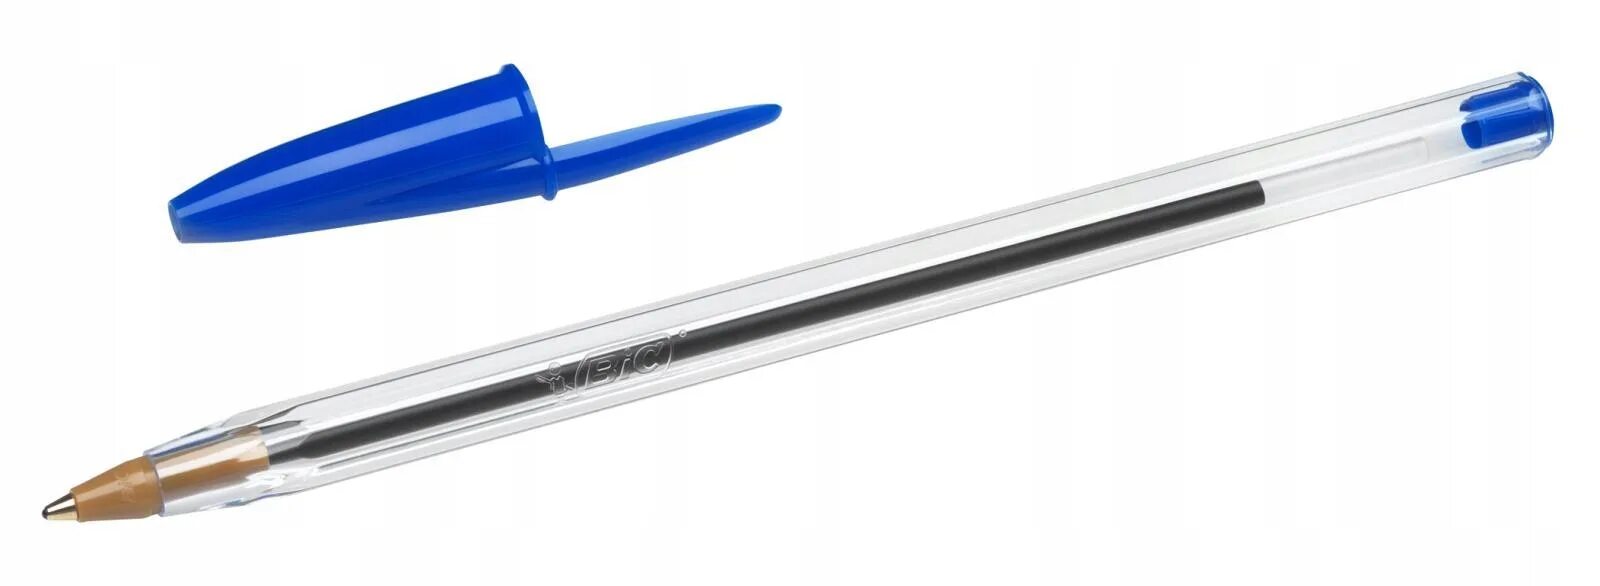 Шариковые ручки оригинал. Ручка шариковая BIC Cristal Original синяя. Ручка шариковая BIC 1.6 mm синяя. Ручка шариковая синяя 0,7мм Cristal exact 992605 BIC. Ручки шариковые BIC Medium.